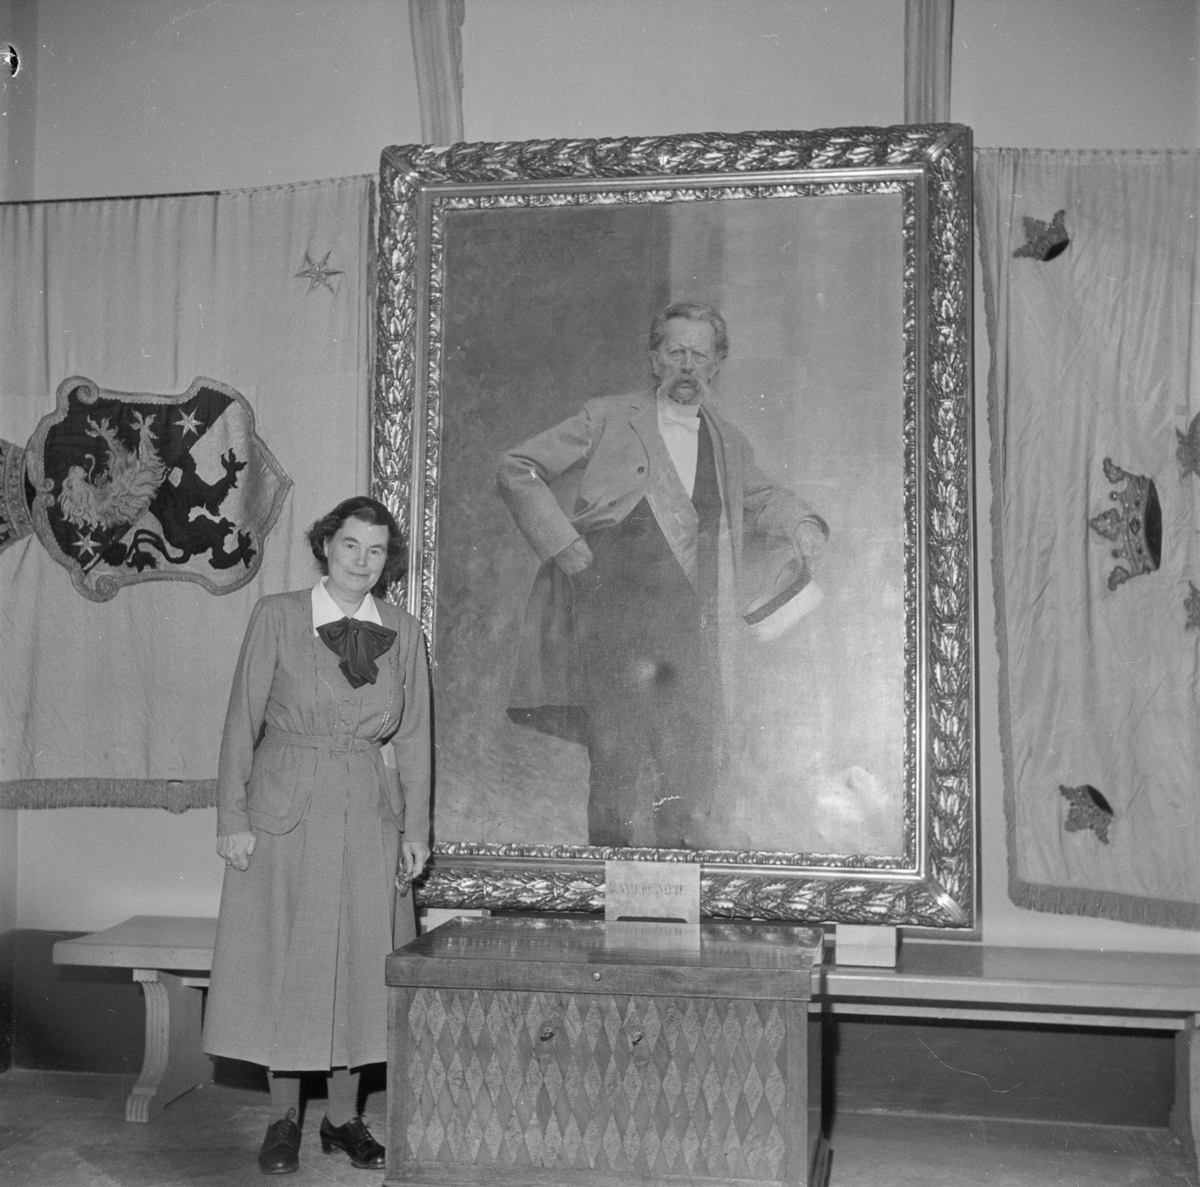 Utställning i samband med studentkårens 100-årsjubileum, porträtt av Gunnar Wennerberg, Uppsala 1949